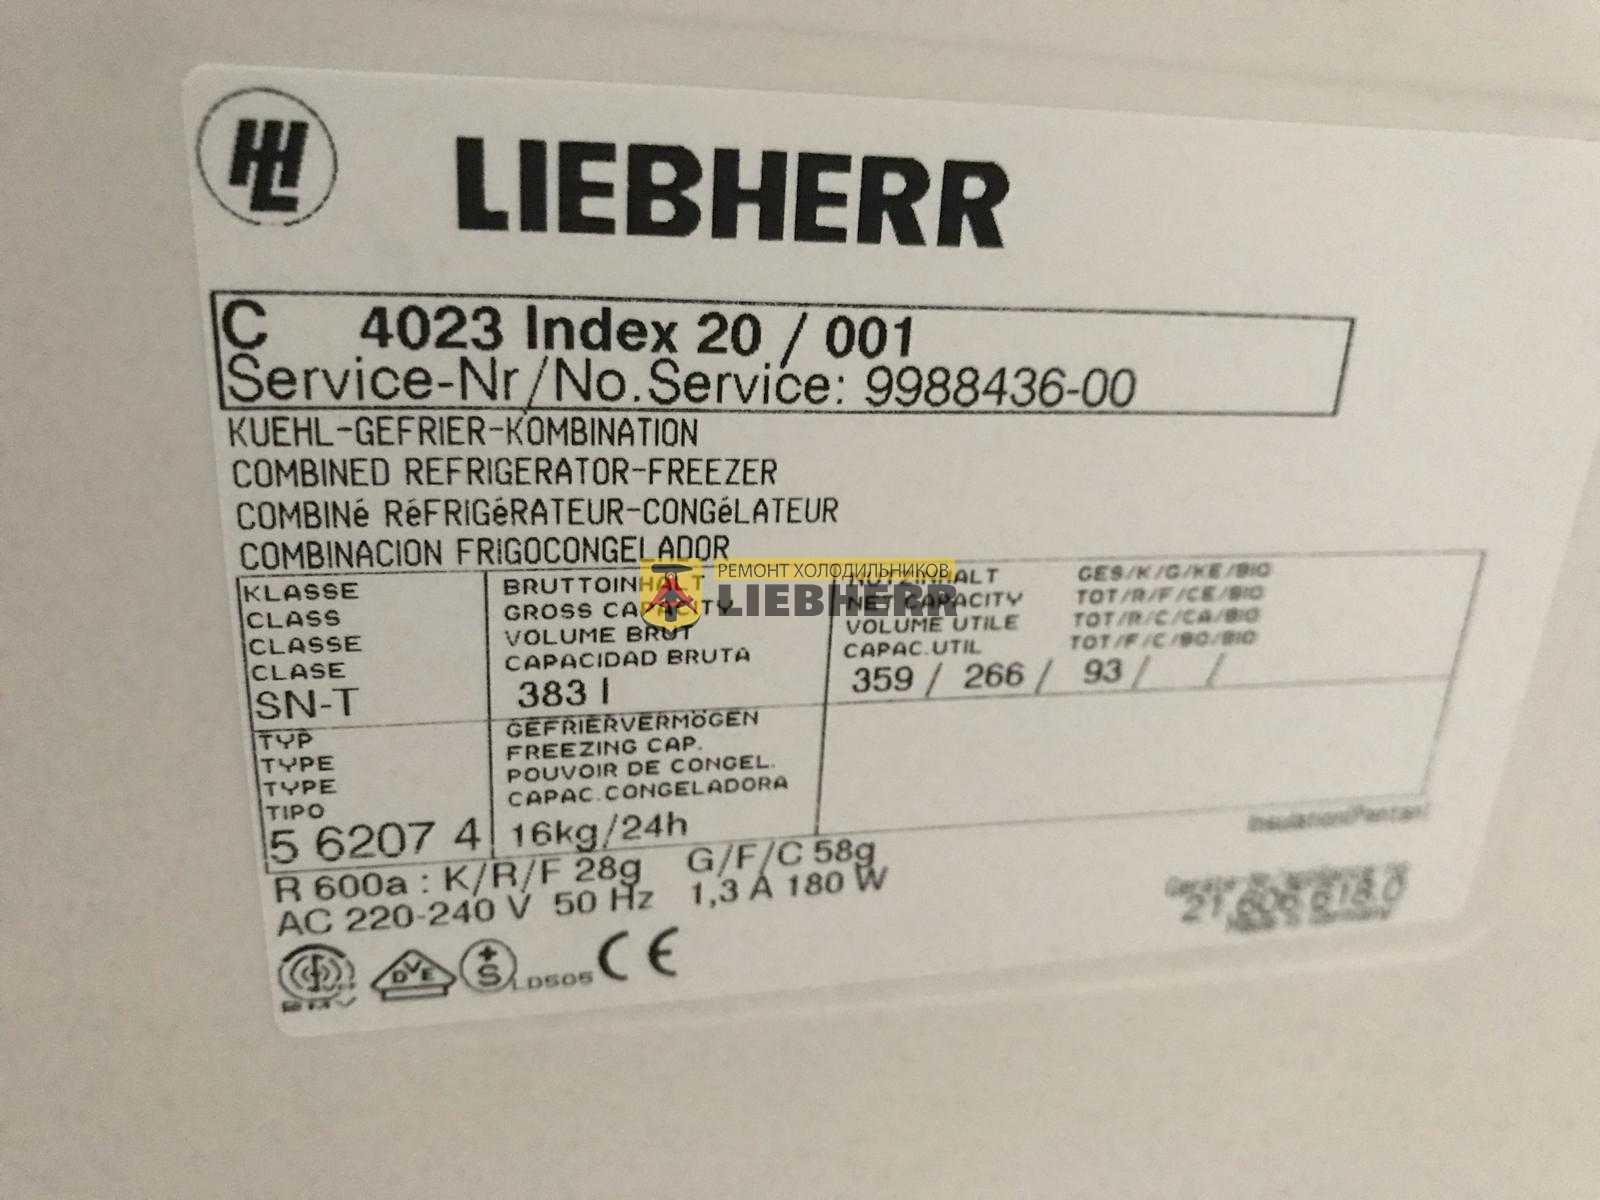 Почему не стоит покупать холодильник liebherr: отзывы. холодильник liebherr - характеристика различных моделей